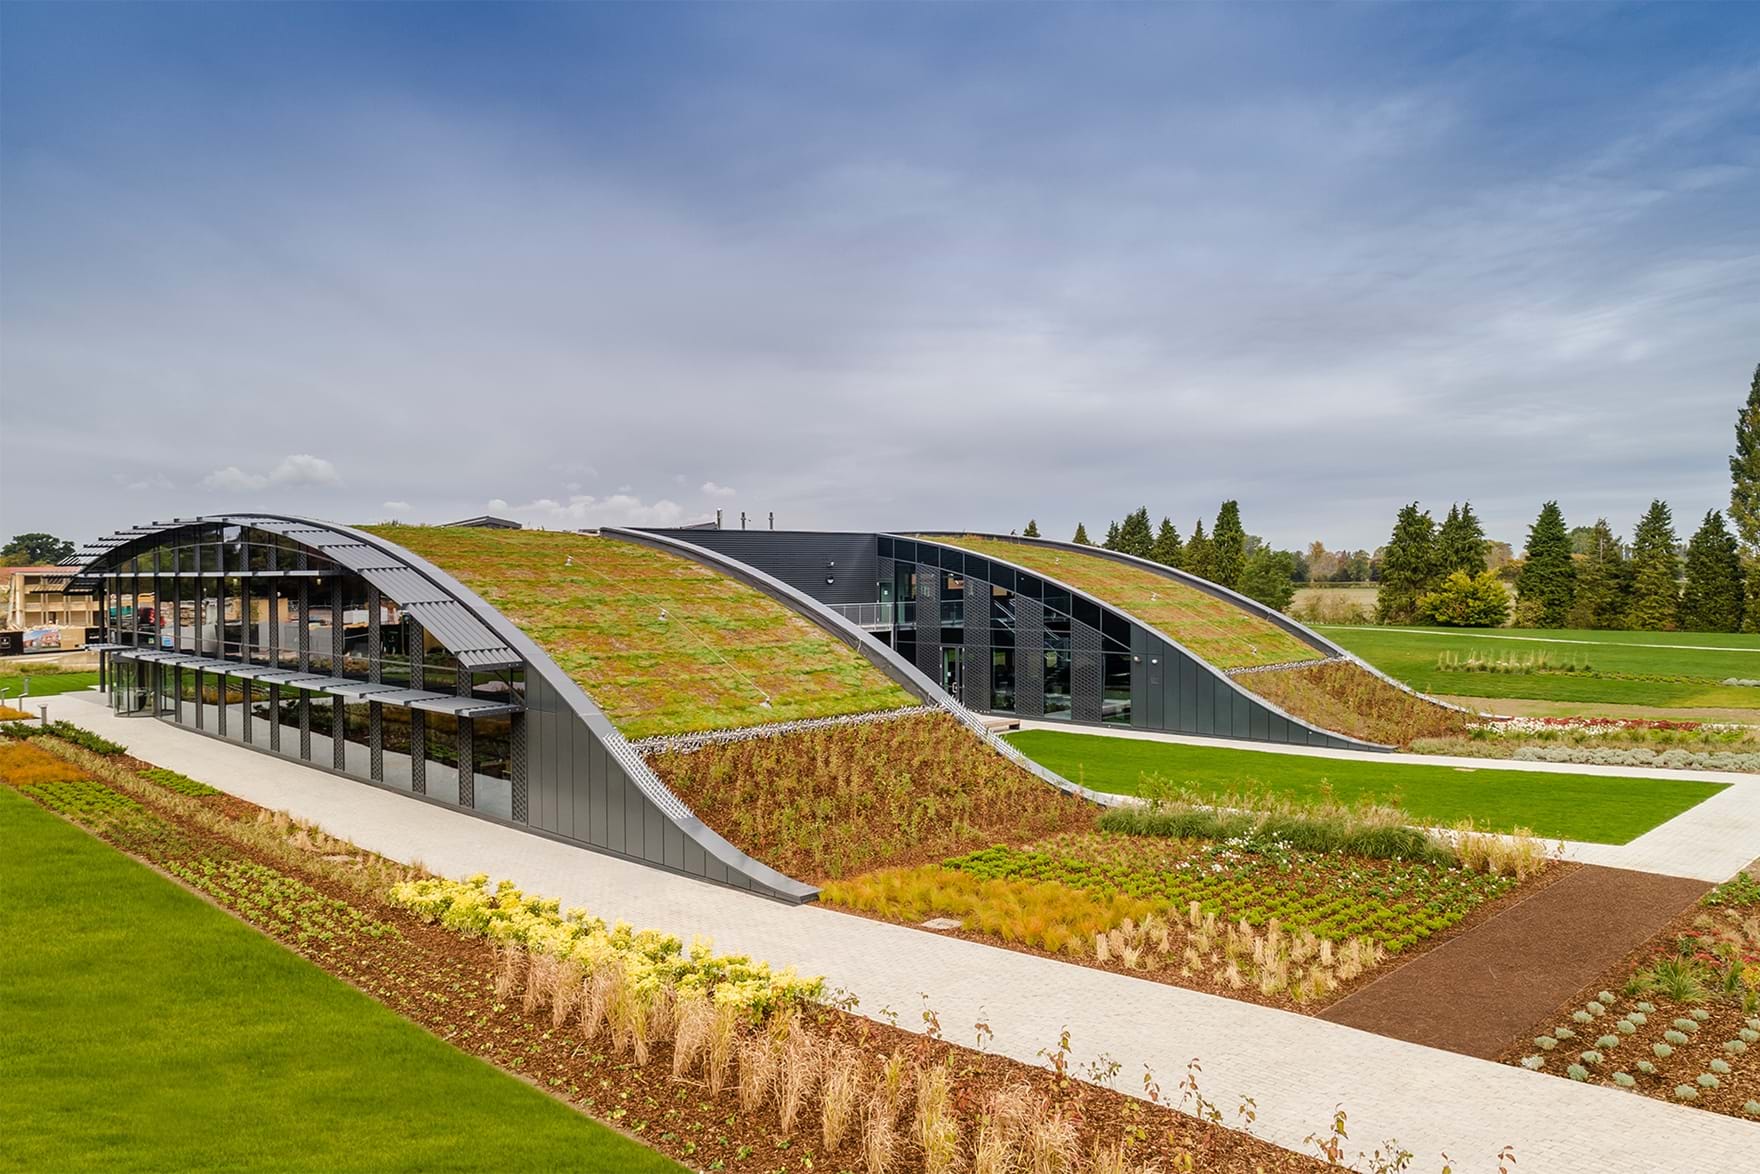 Telhado verde promove a biodiversidade e a eficiência energética neste edifício